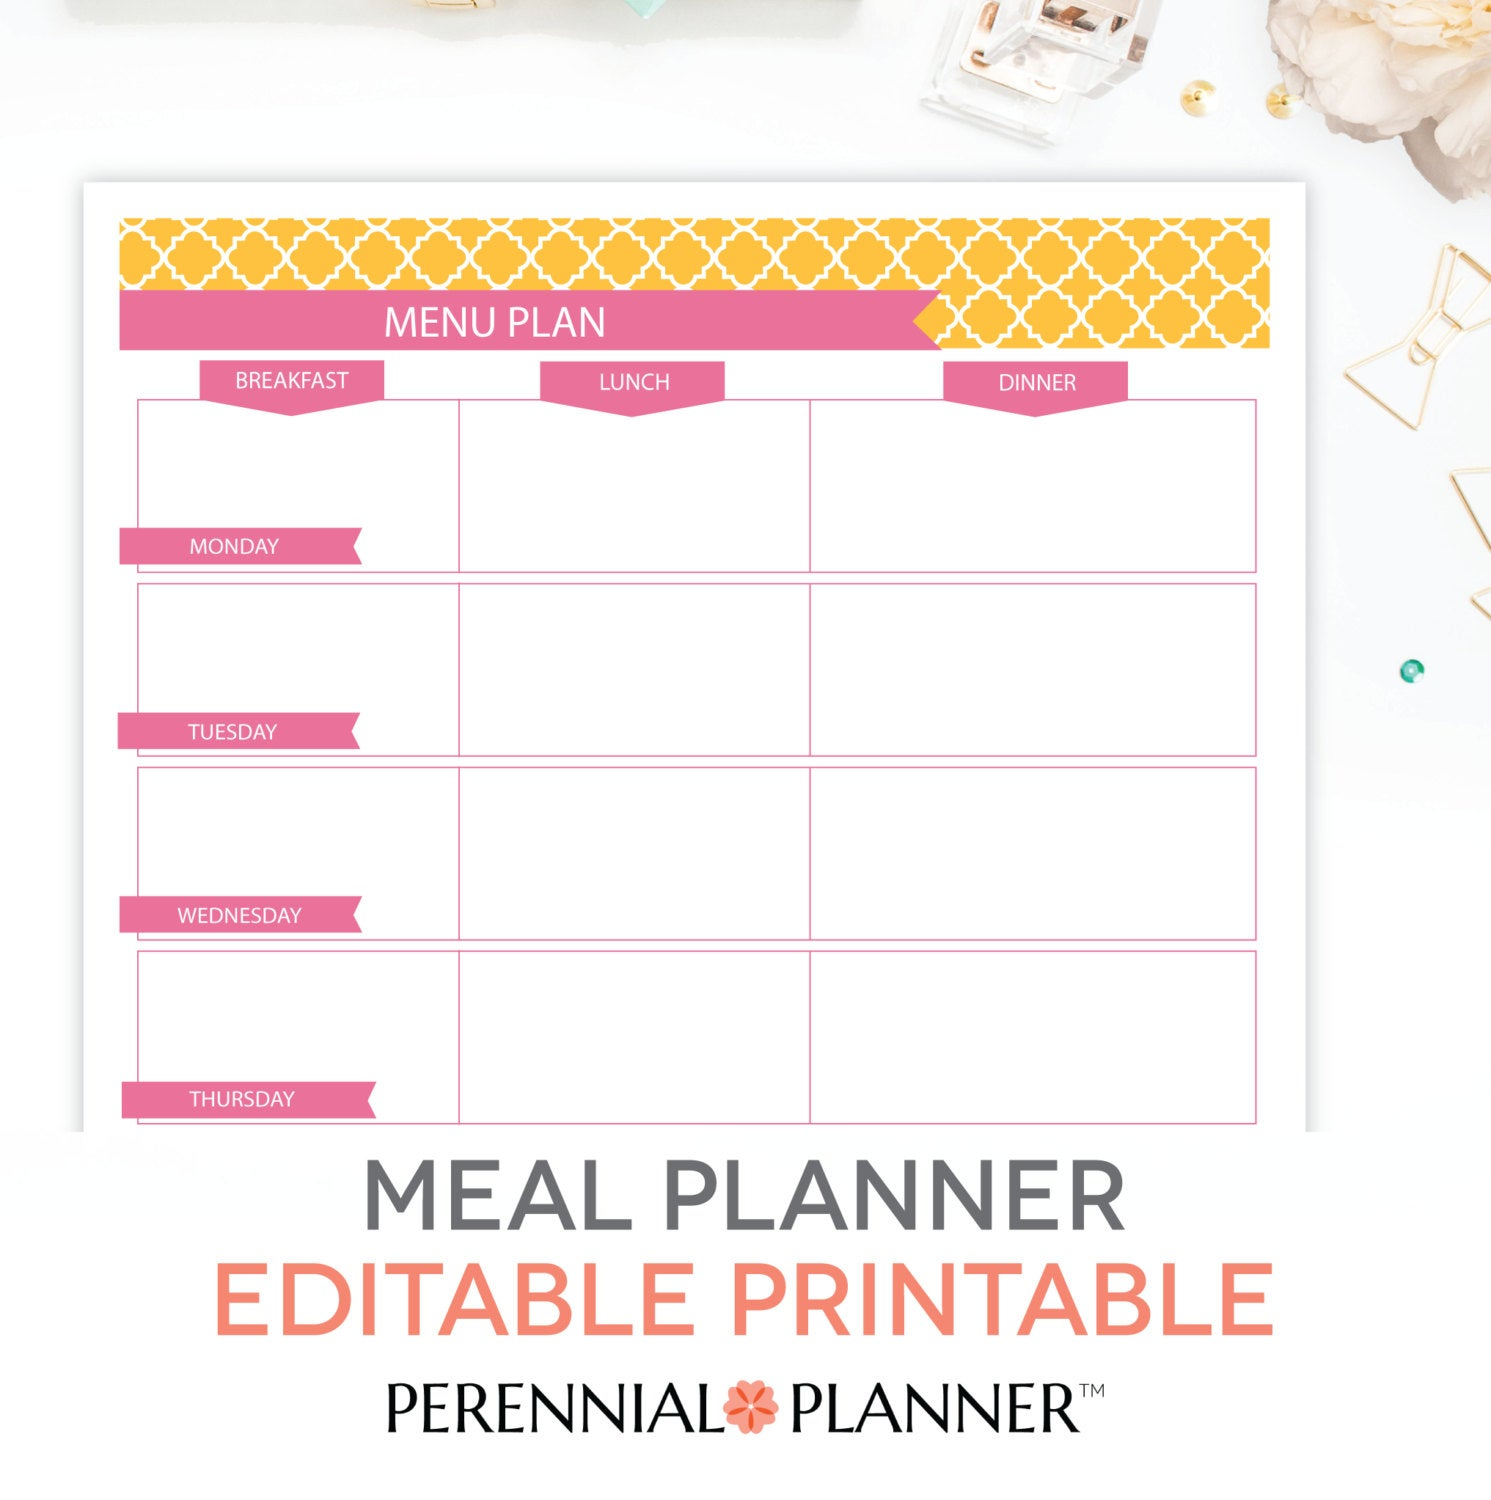 Menu Plan Weekly Meal Planning Template Printable EDITABLE